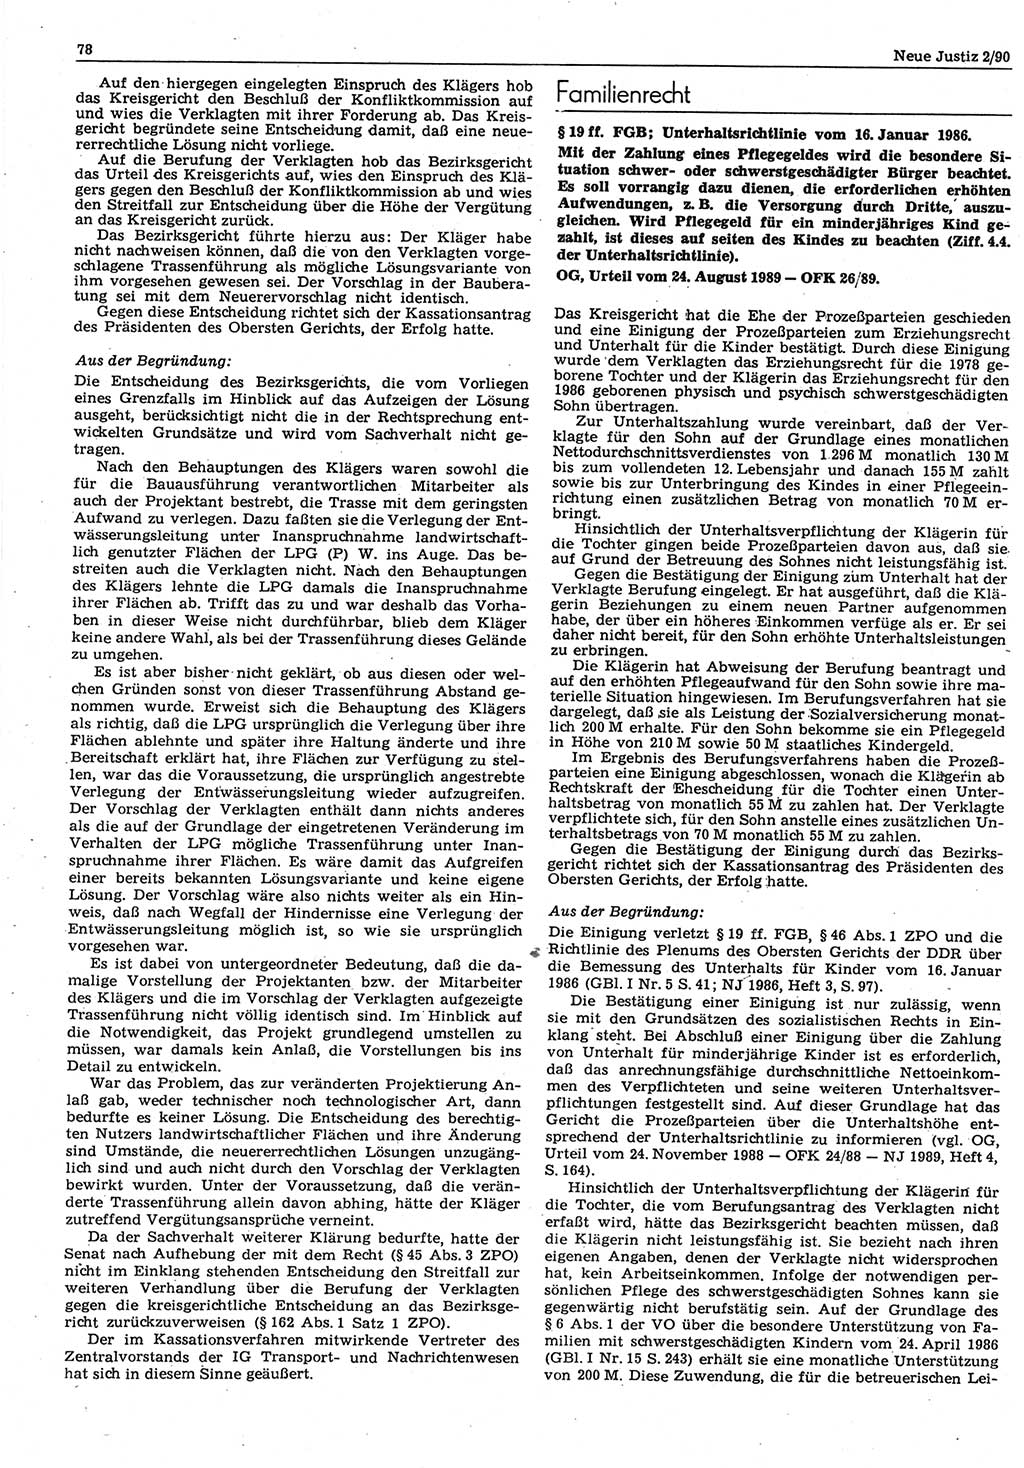 Neue Justiz (NJ), Zeitschrift für Rechtsetzung und Rechtsanwendung [Deutsche Demokratische Republik (DDR)], 44. Jahrgang 1990, Seite 78 (NJ DDR 1990, S. 78)